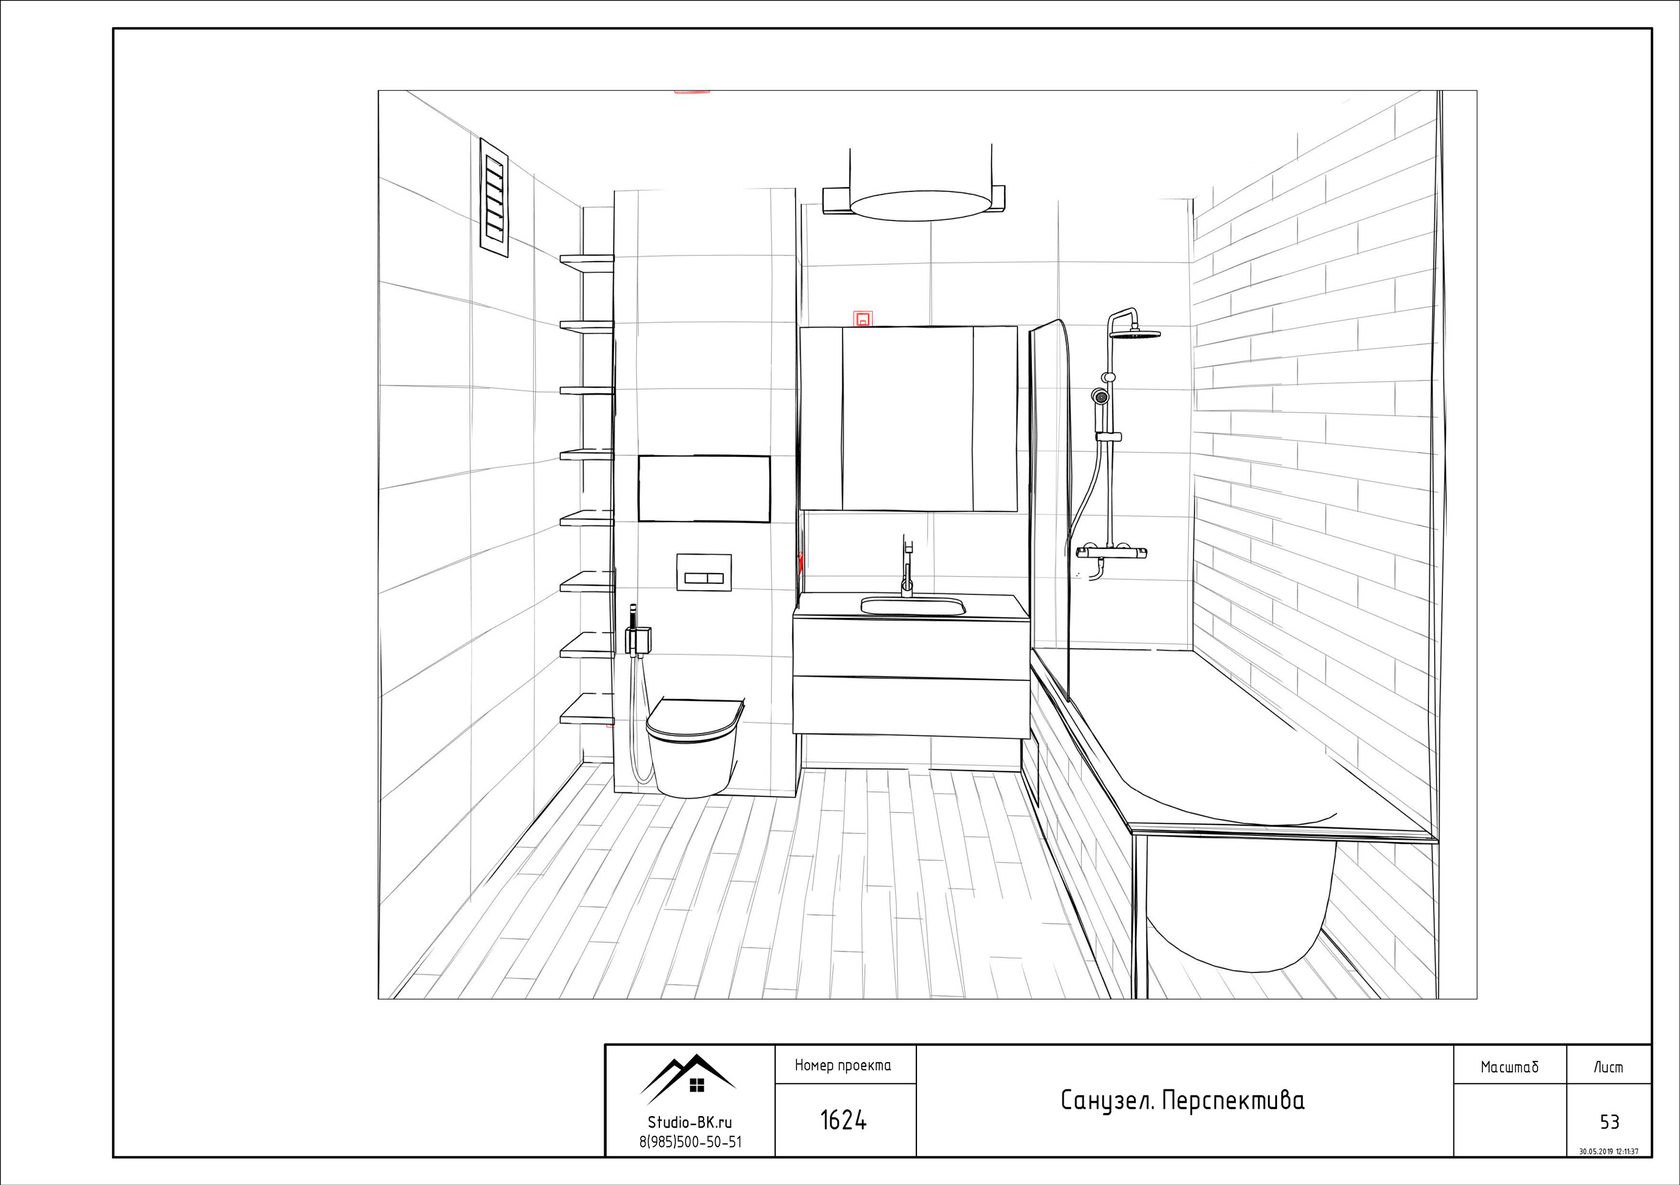 Дизайн комнаты с размерами. Ванна 3м2 чертежи. Чертеж ванной комнаты с размерами. Ванная комната чертеж. Проект ванной комнаты чертеж.